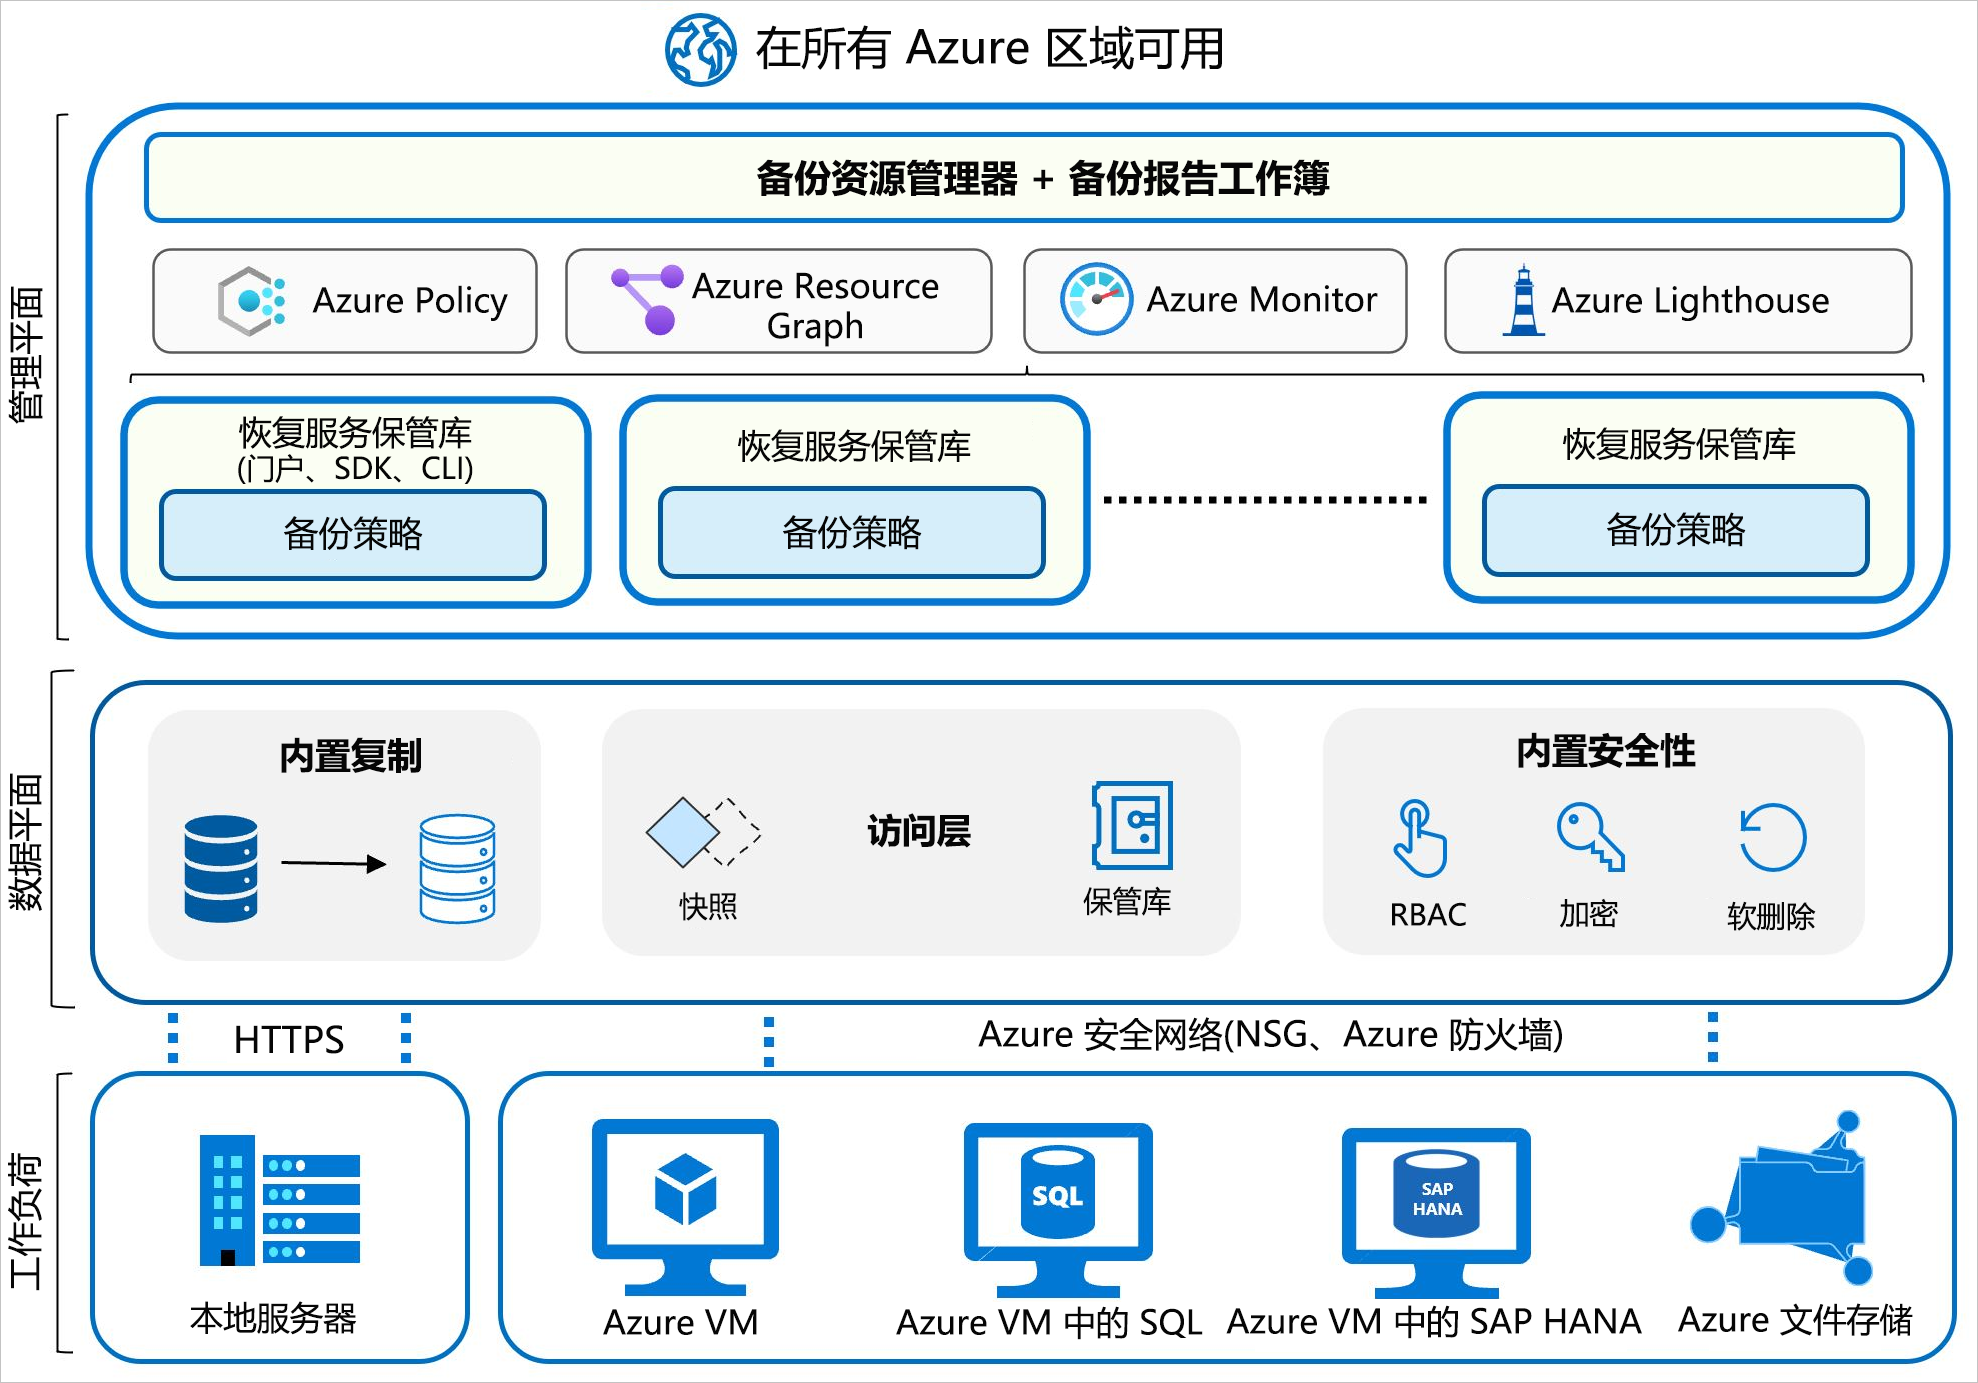 Azure 备份体系结构的关系图，其中底部显示的是工作负载，传入到上方的数据平面，整合到管理平面，其中列出了实现管理的备份策略、Azure 策略、Azure Monitor 和 Azure Lighthouse 服务。